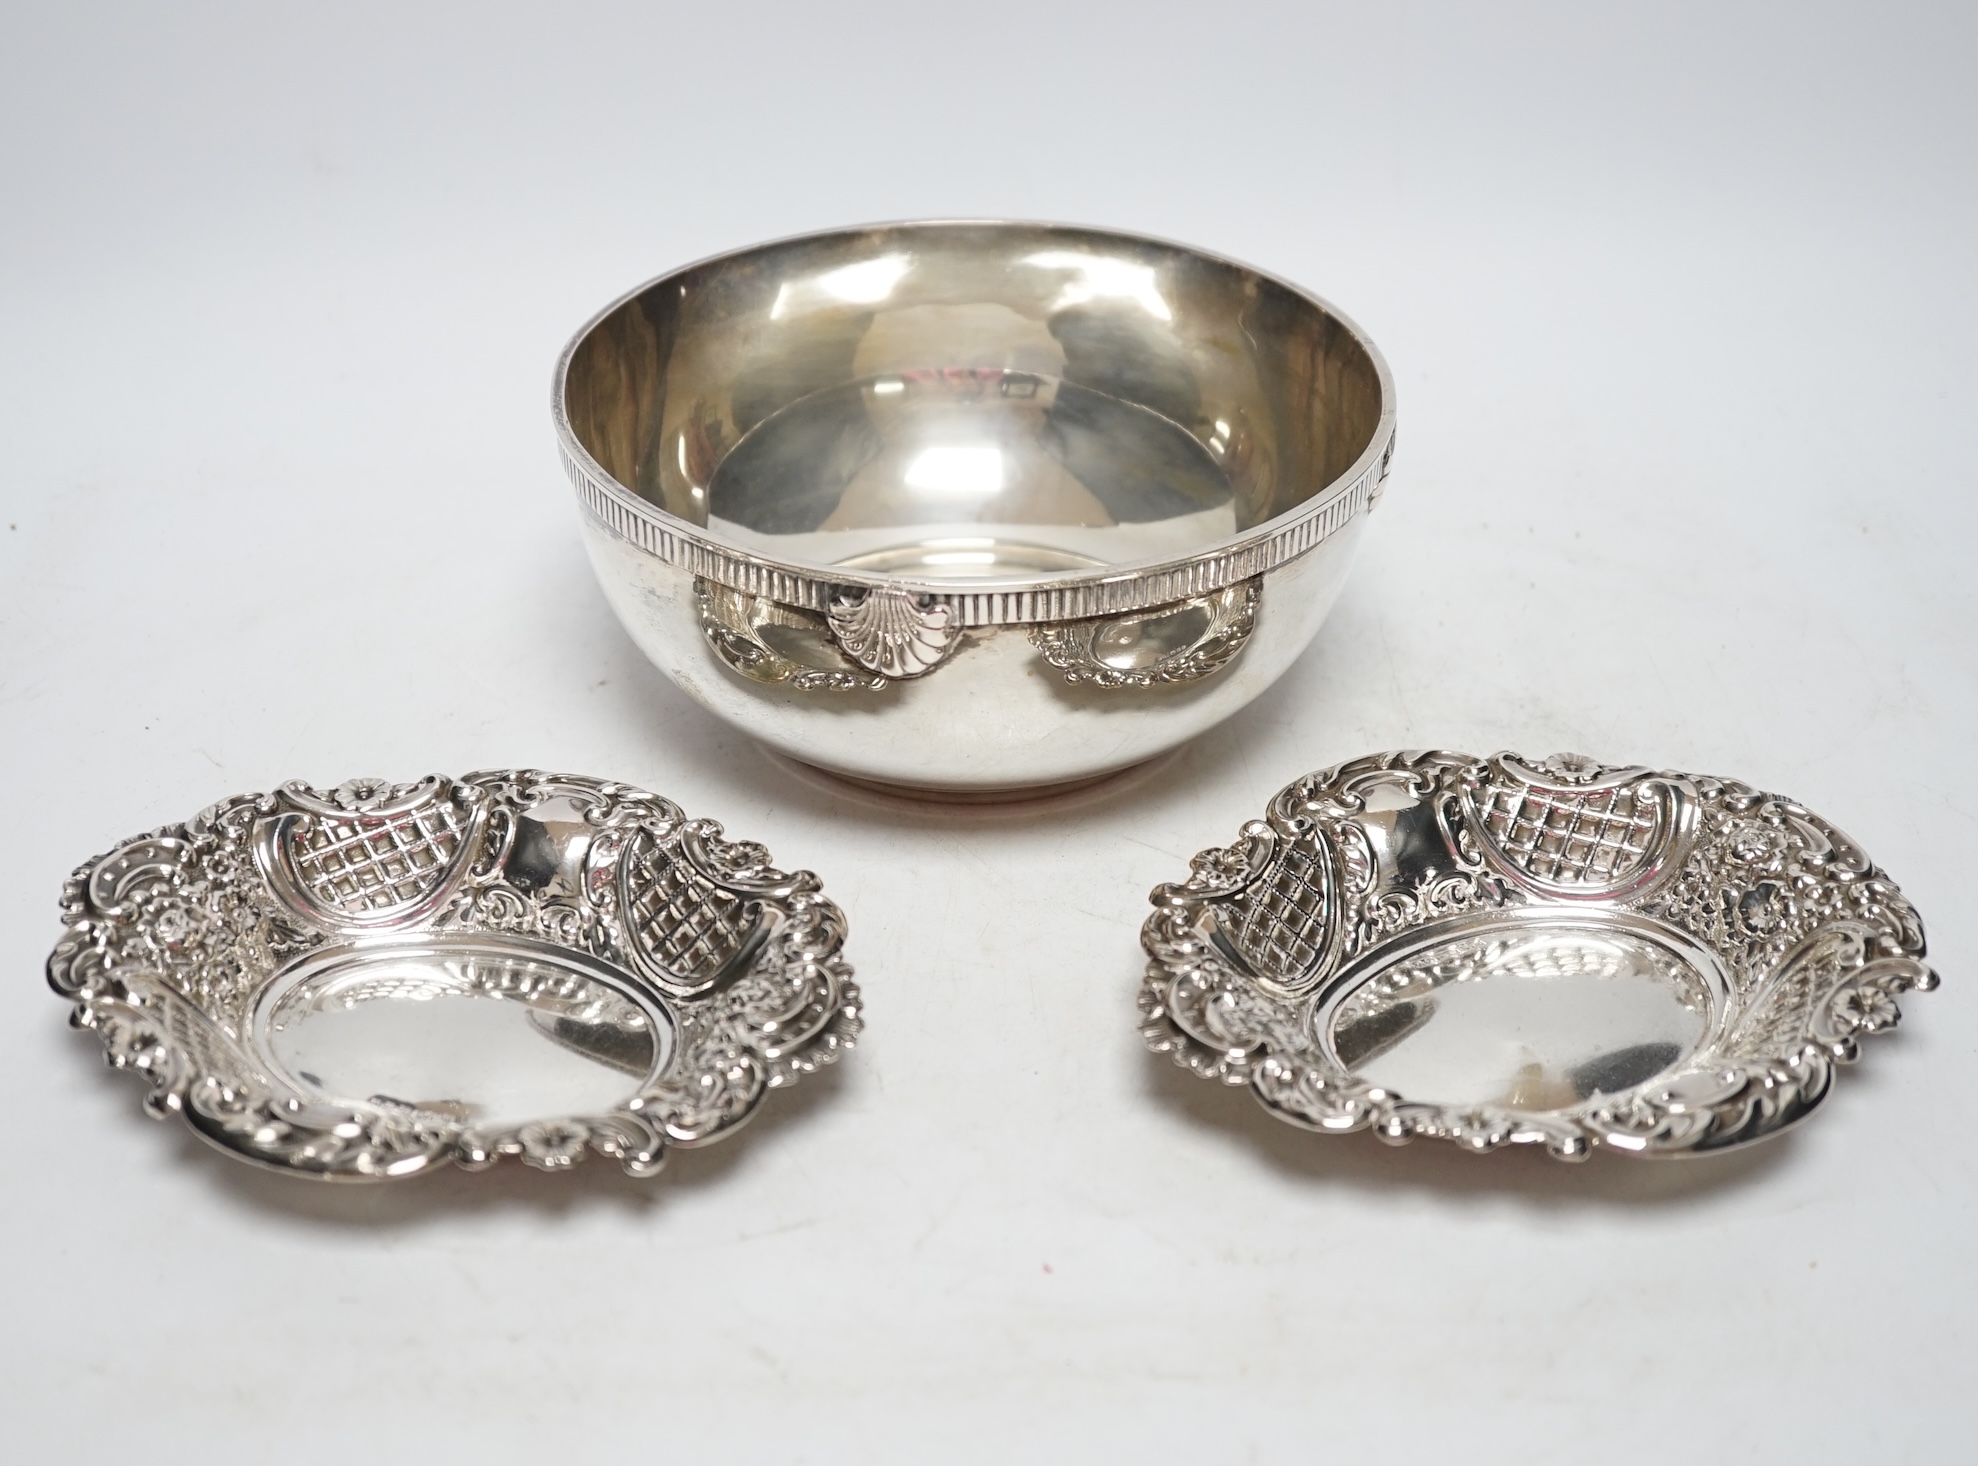 An 800 standard white metal bowl, diameter 17.3cm and a pair of George V pierced silver bonbon dishes, 18.7oz. Fair condition.